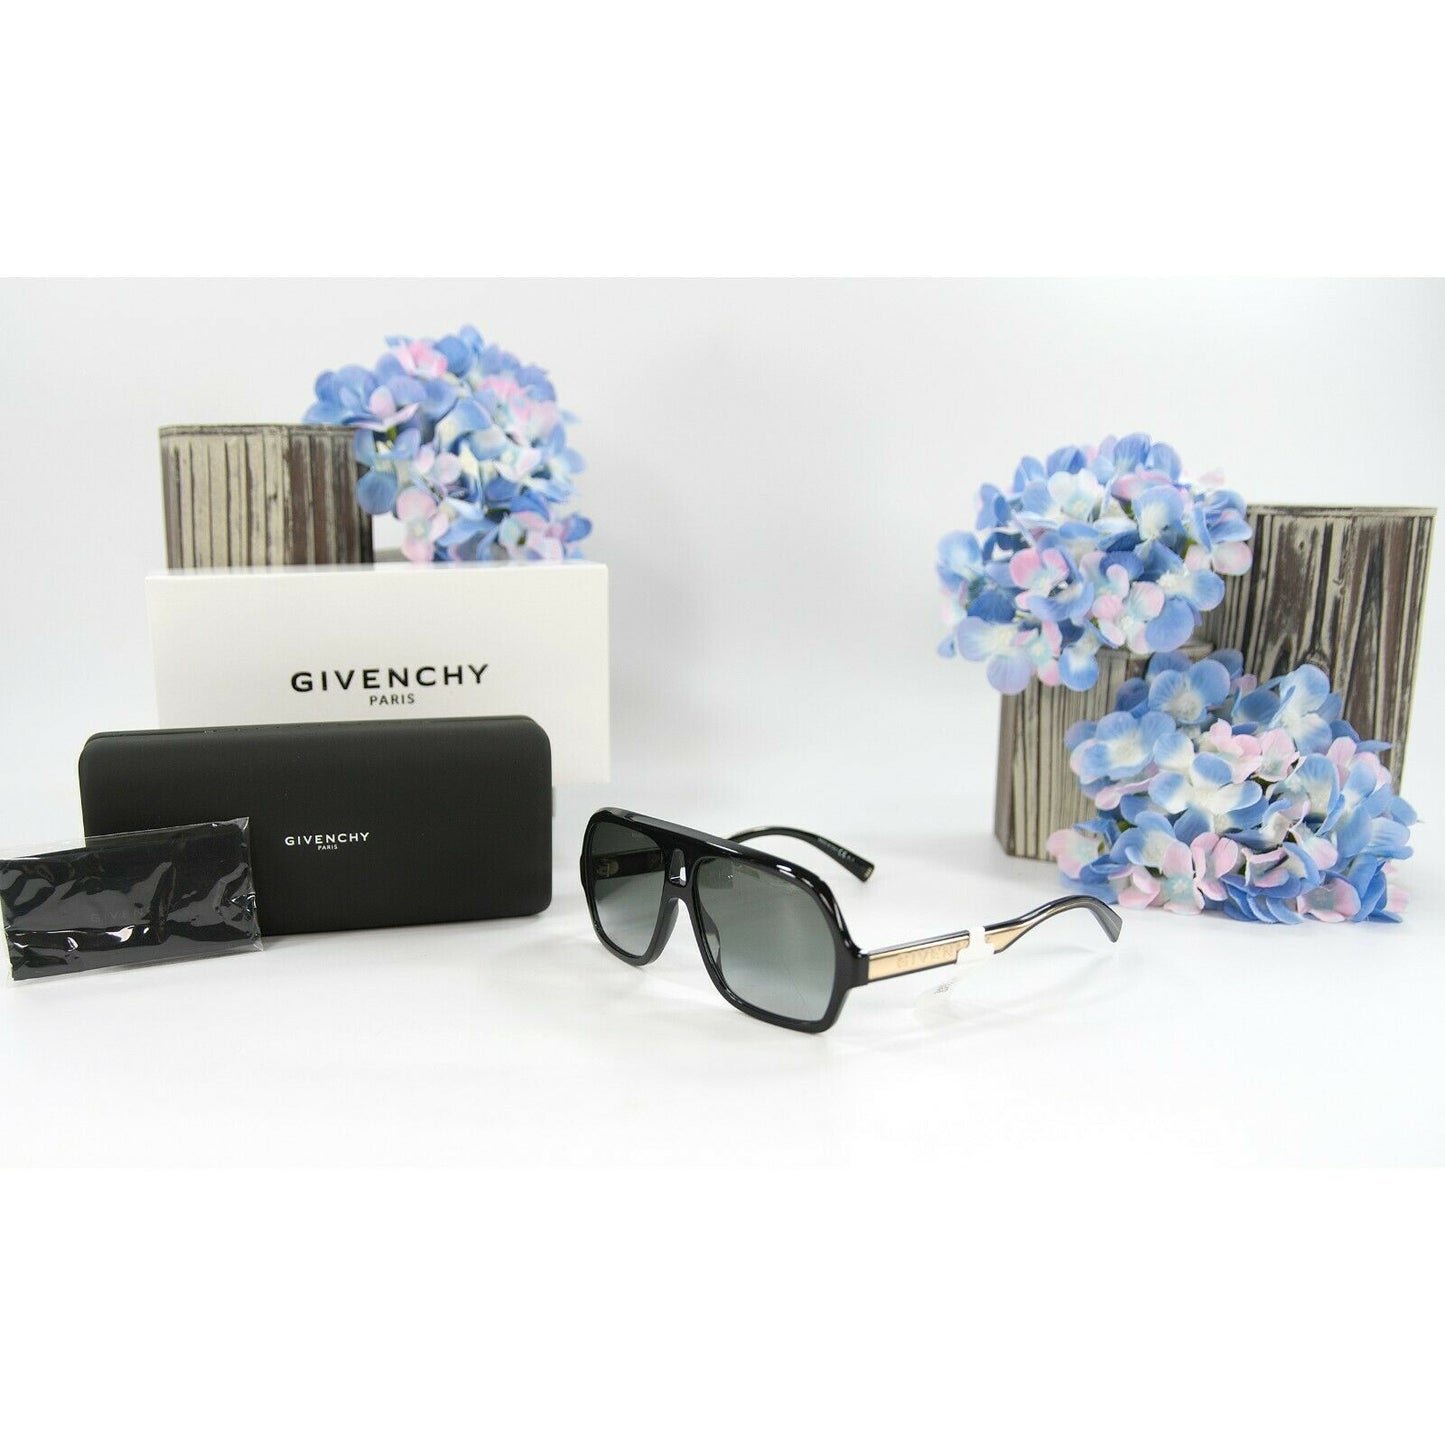 Givenchy GV8079O Black Gold Oversize Acrylic Logo Sunglasses NWT Case